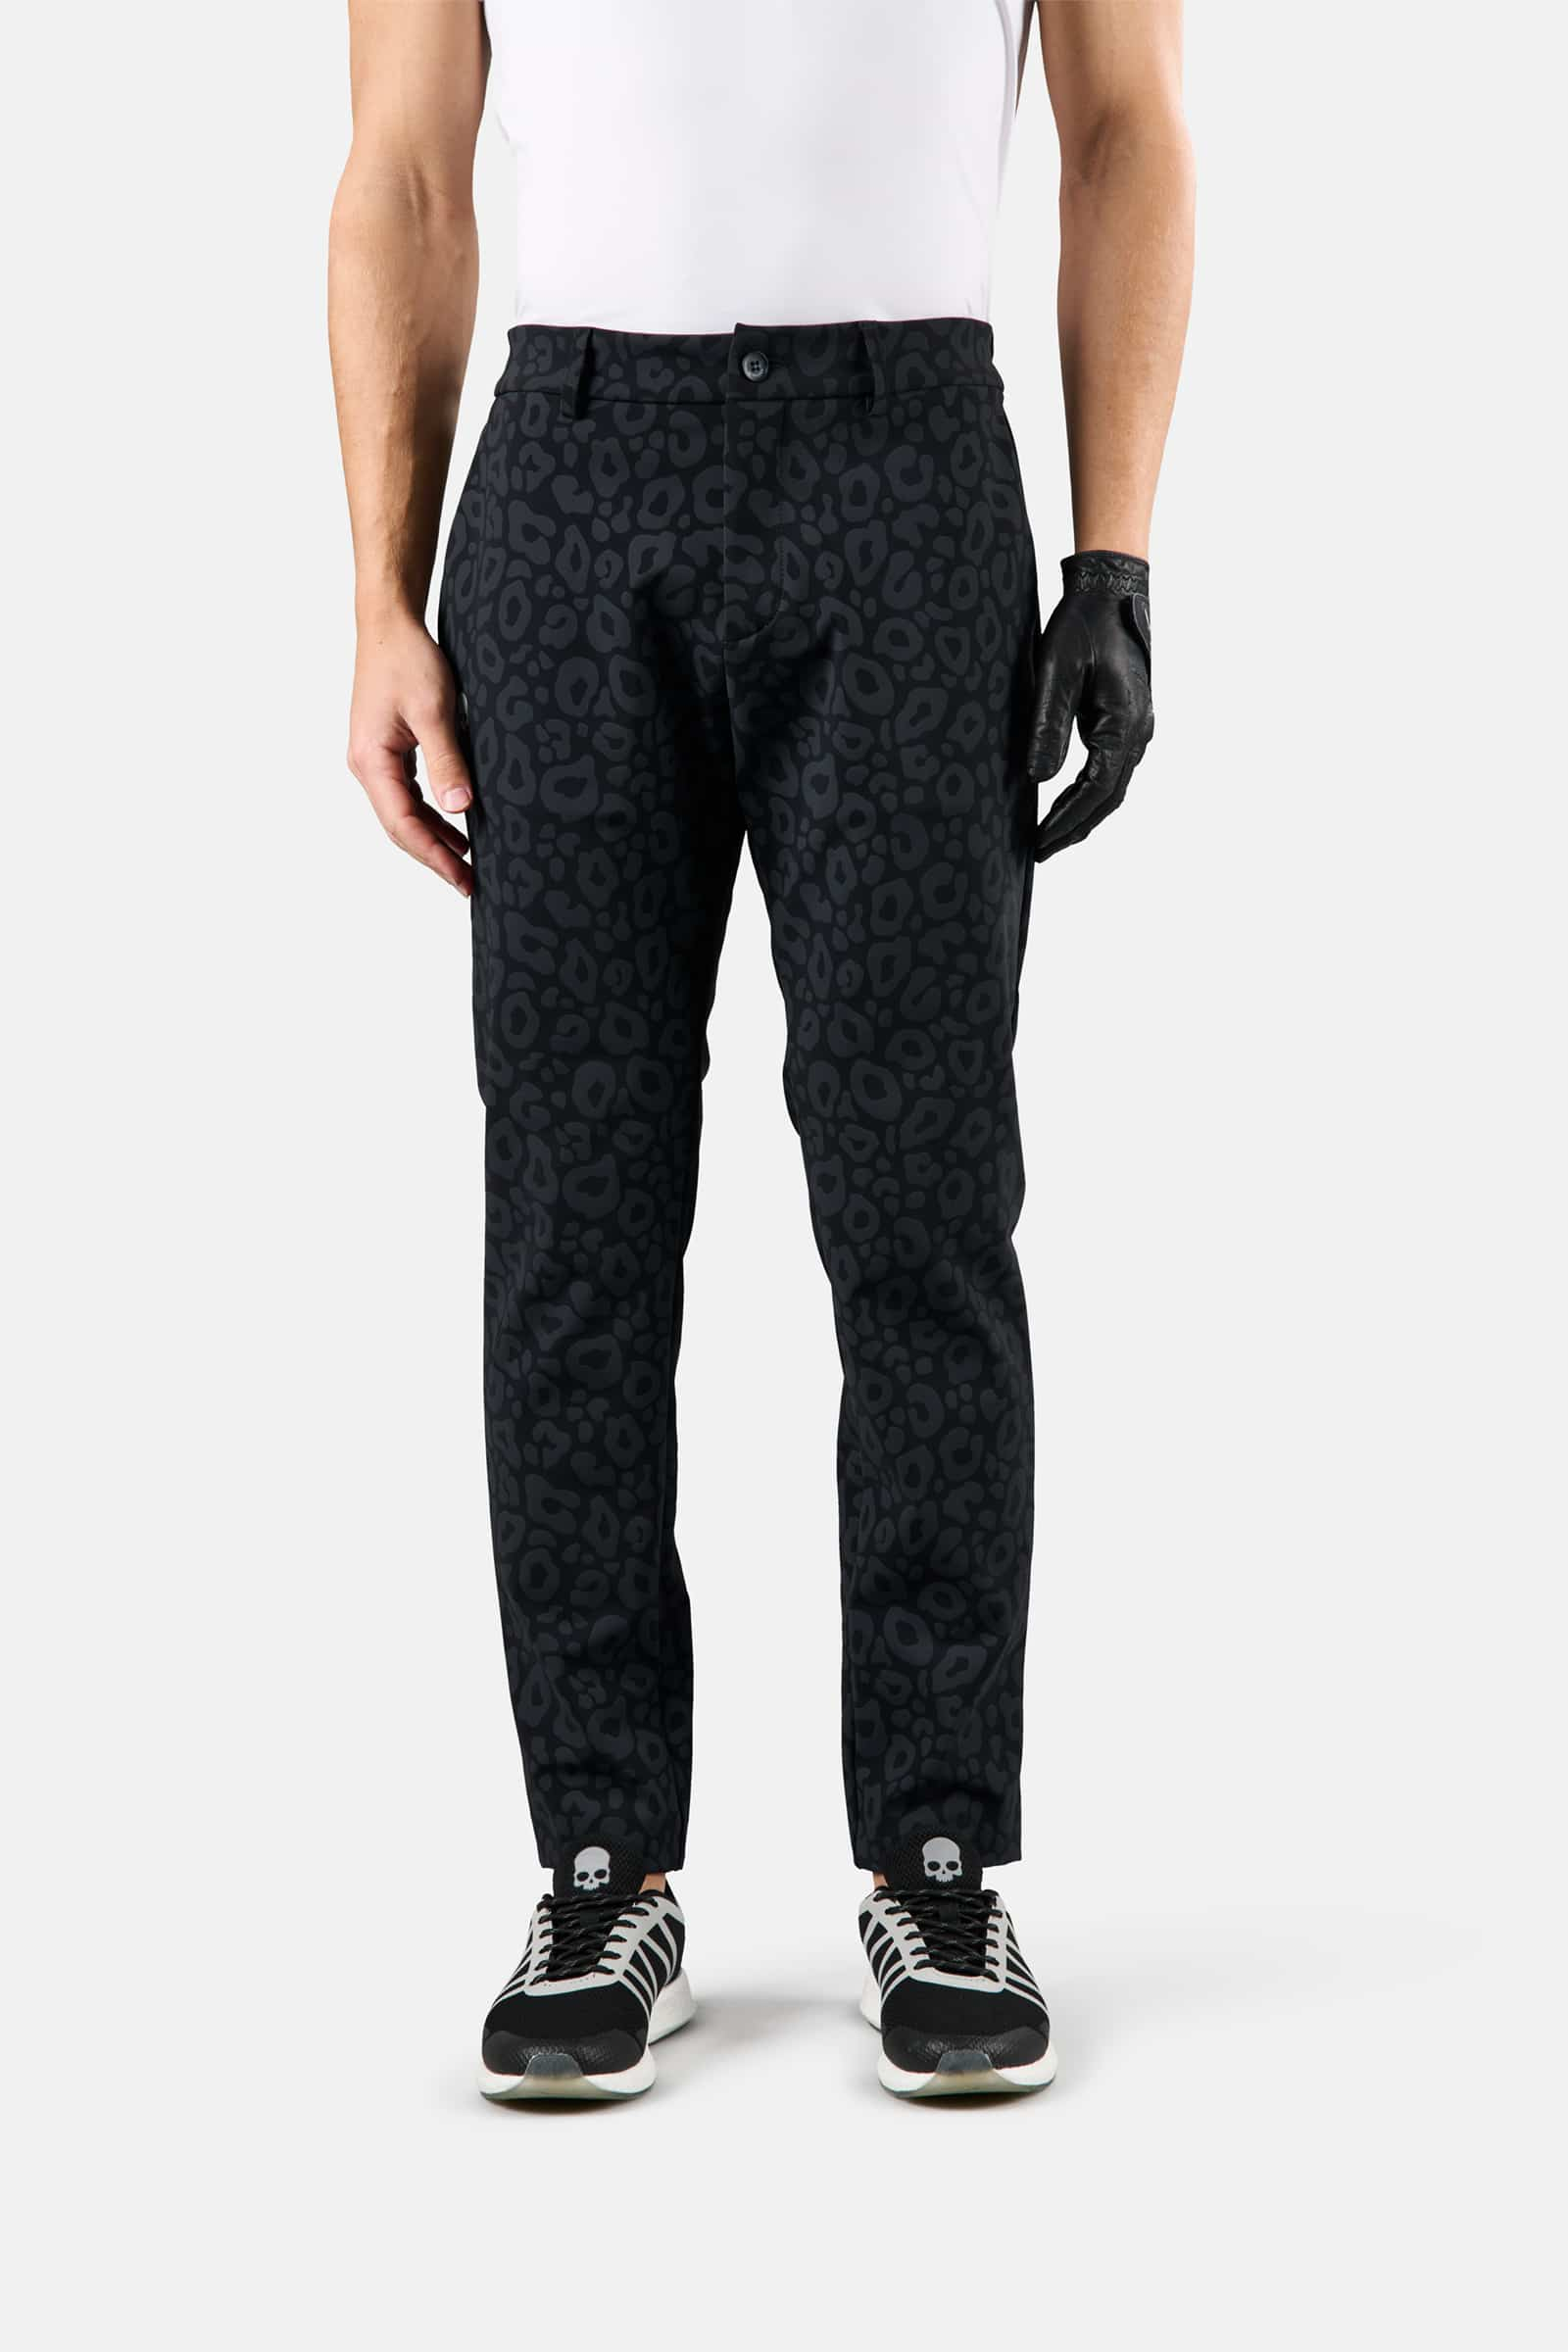 WINTER GOLF TECH PANTS - Apparel - Outlet Hydrogen - Luxury Sportwear